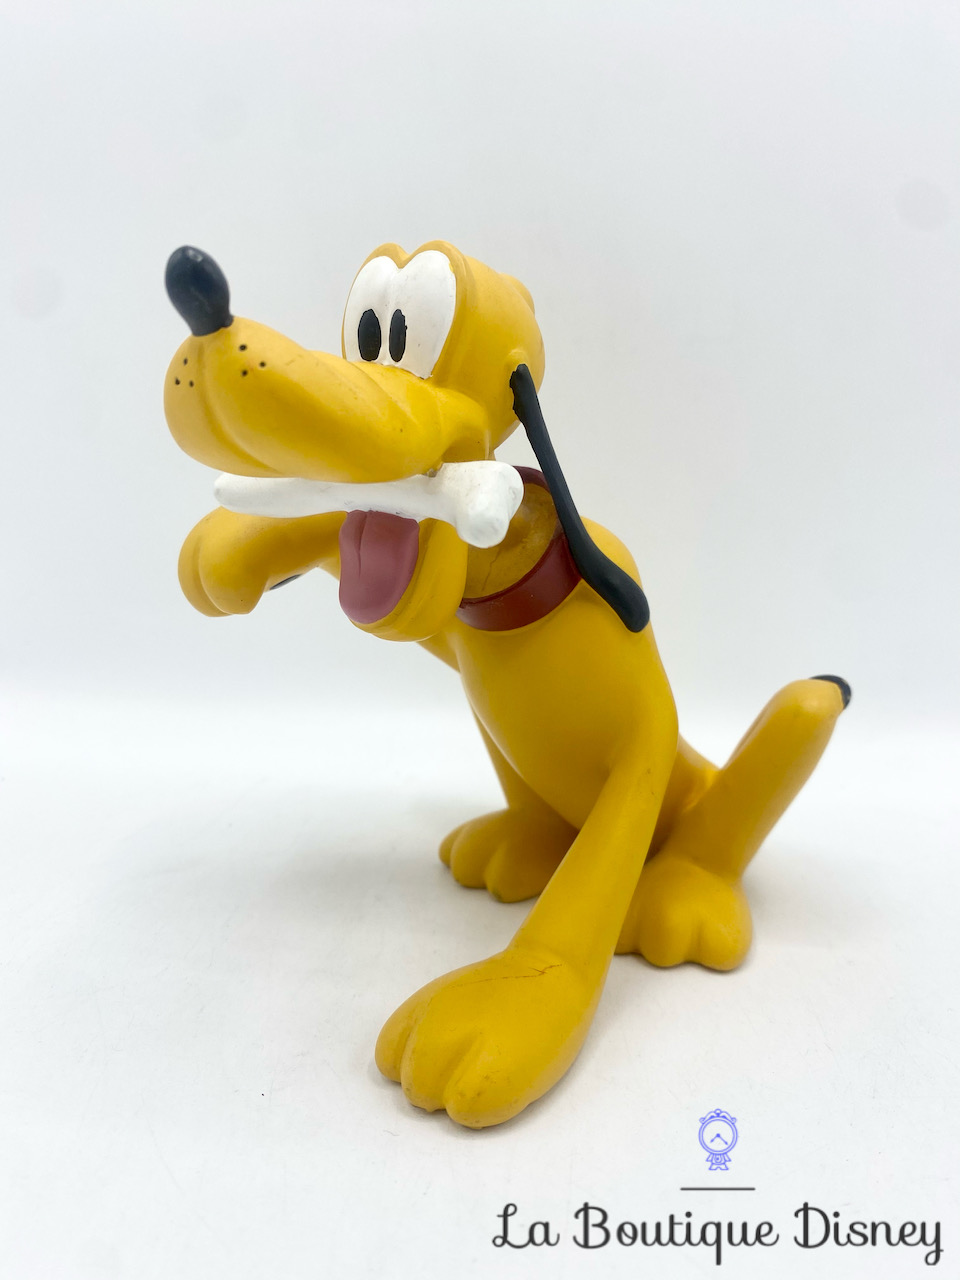 Figurine Pluto Os Démons et Merveilles Disney résine chien jaune 14 cm